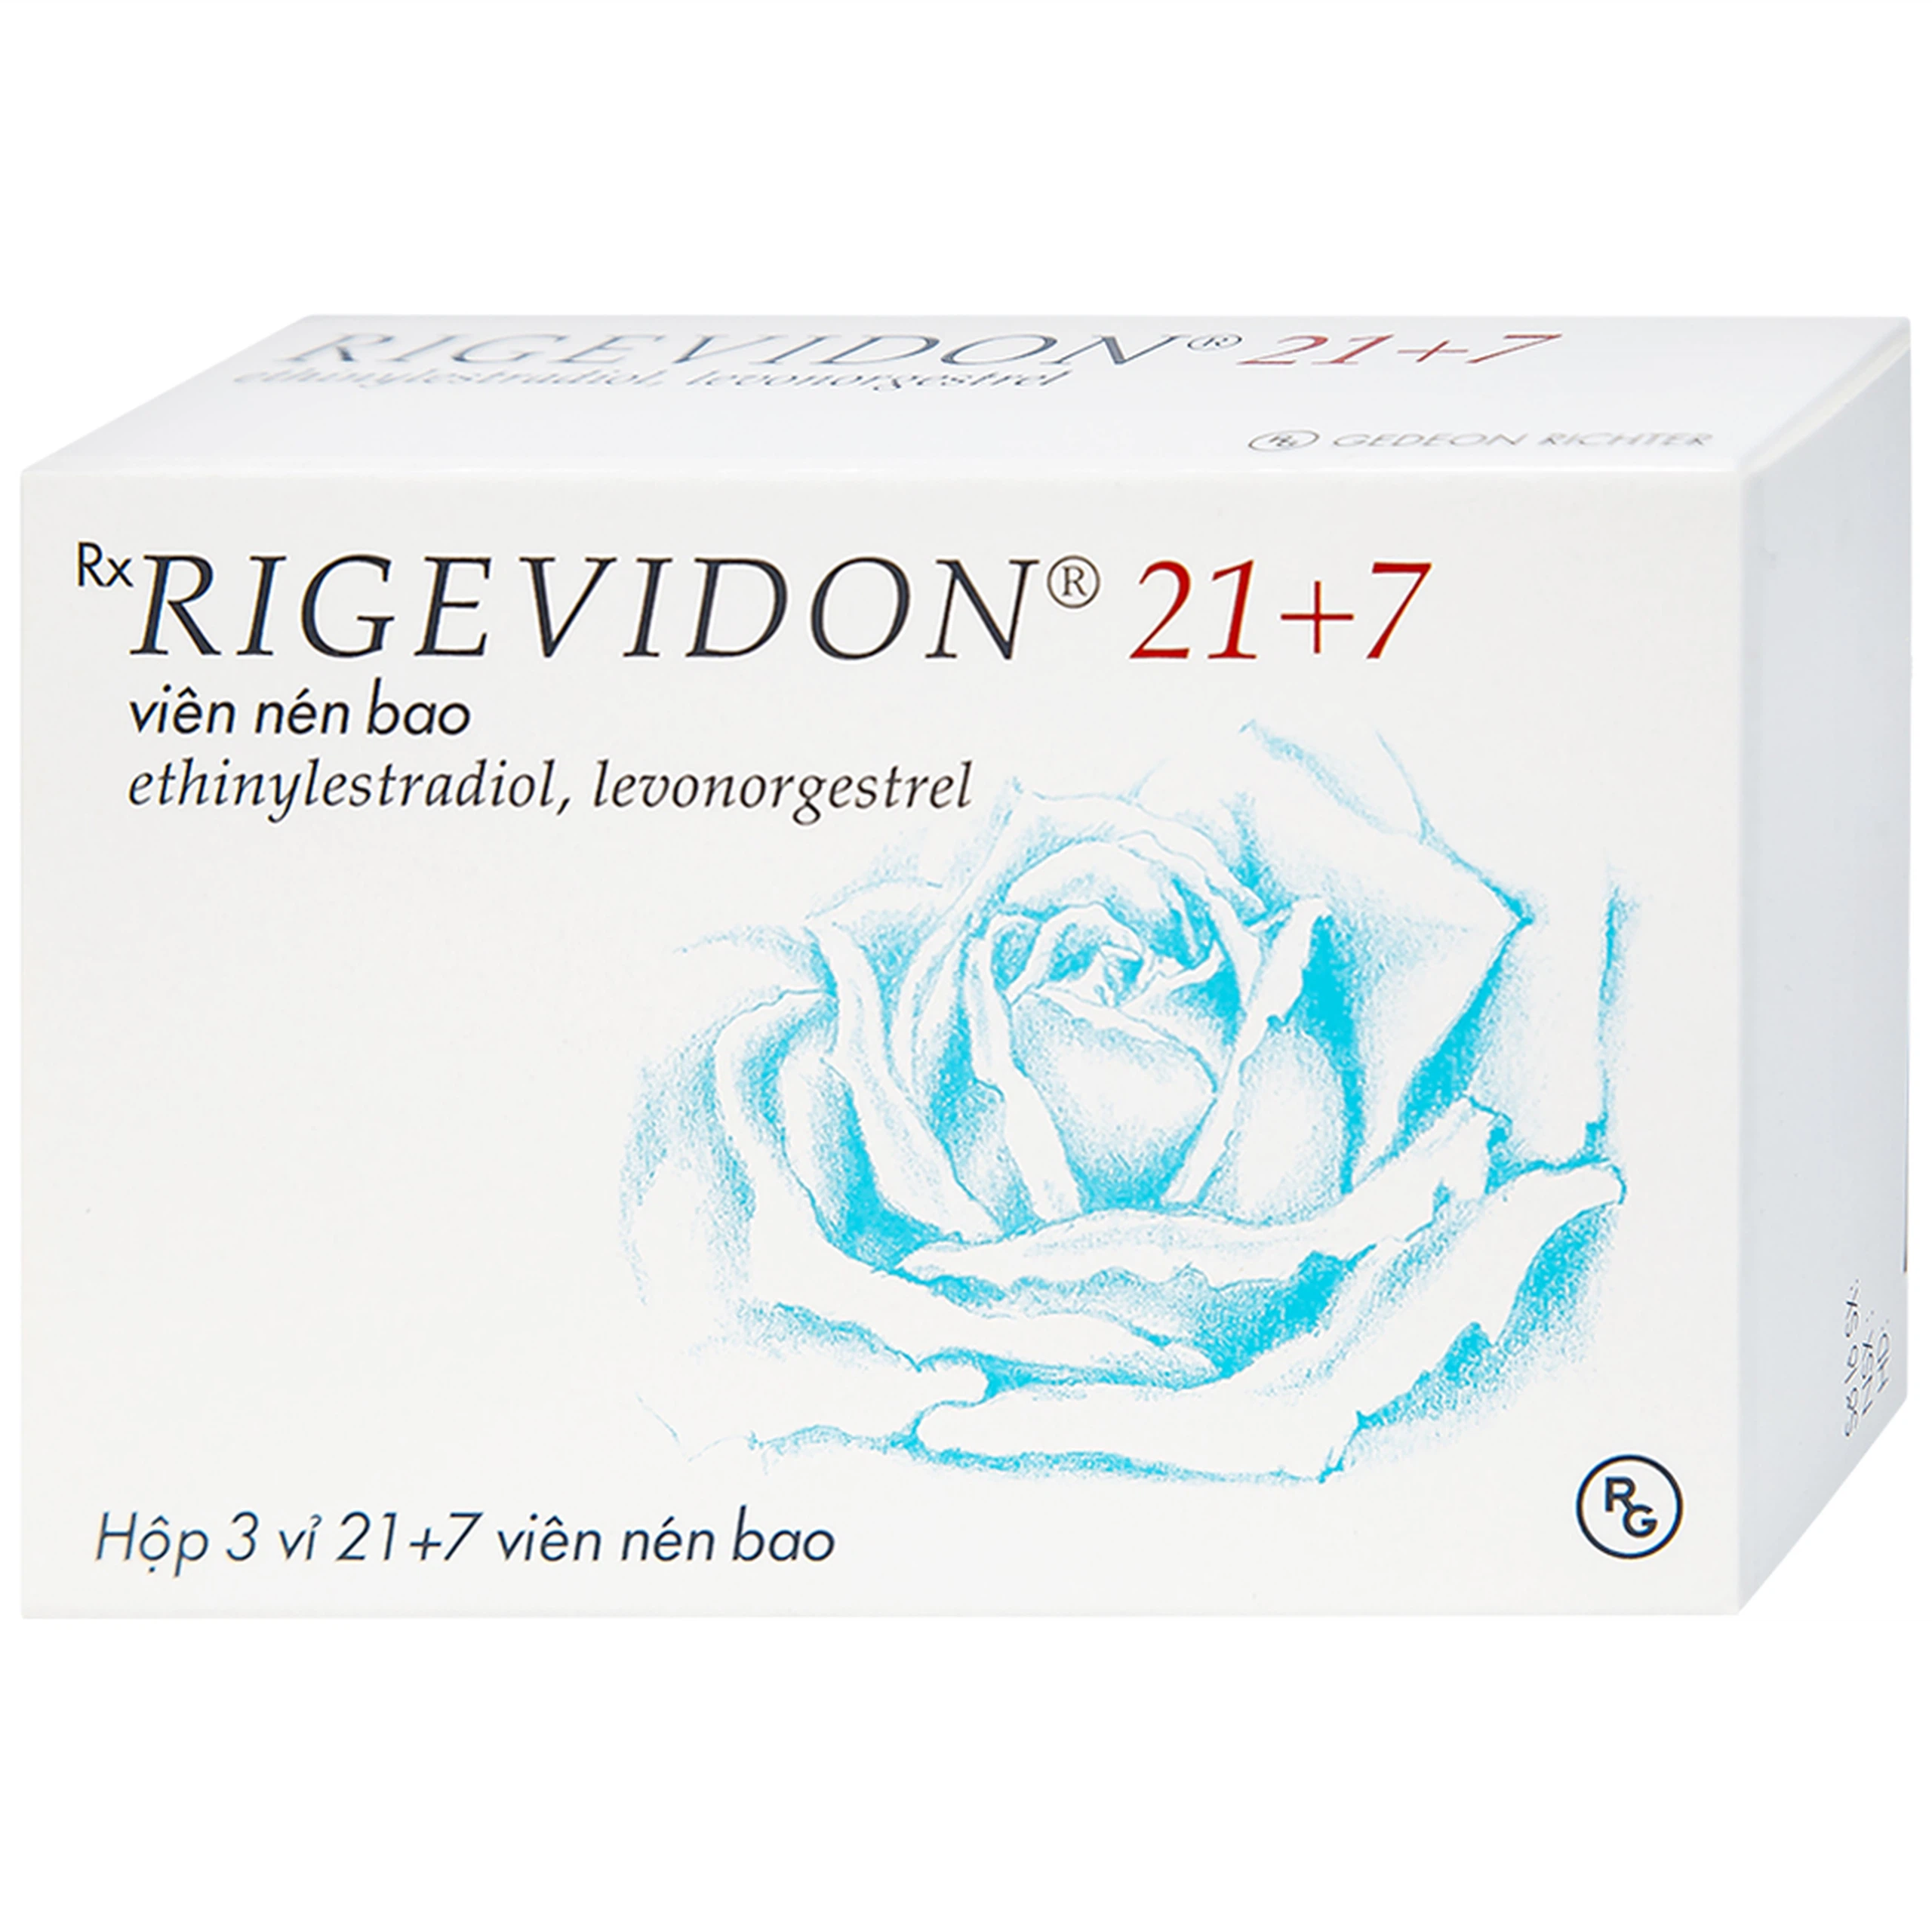 Thuốc Rigevidon 21+7 Gedeon dùng cho tránh thai (3 vỉ x 28 viên) 